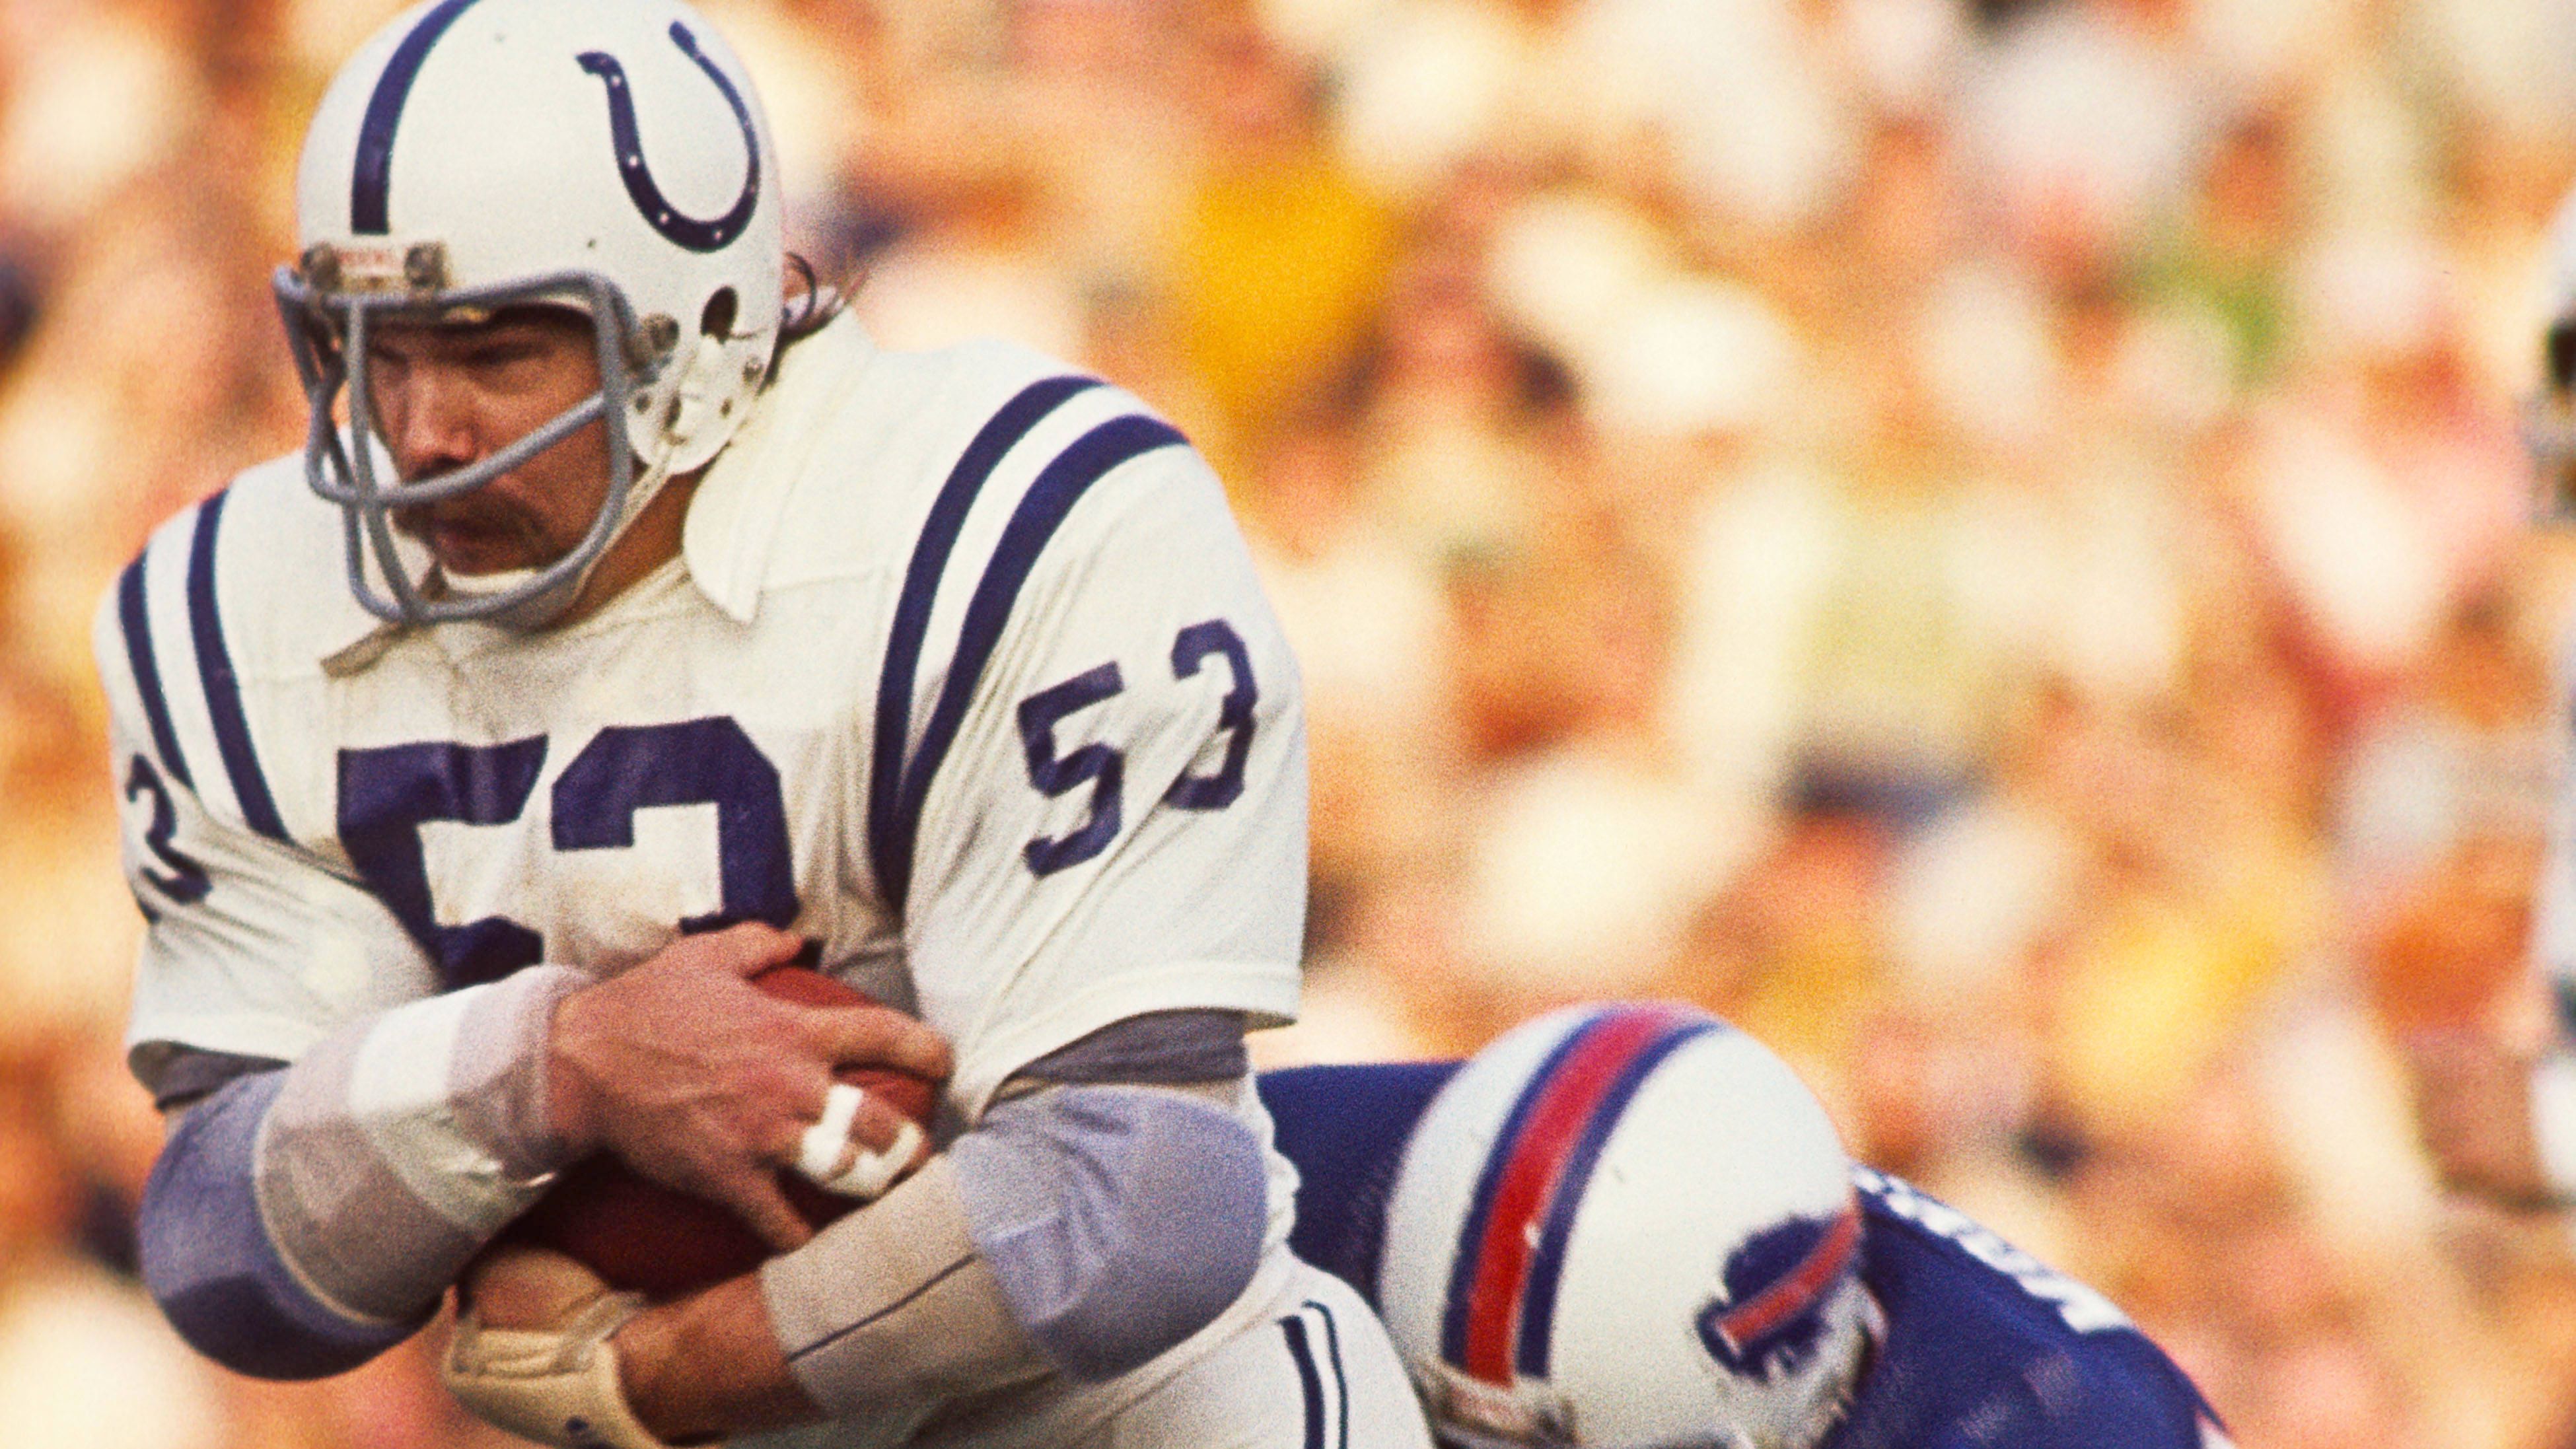 <strong>1975 - erster Coaching-Job bei den Baltimore Colts<br></strong>Bei den Colts - damals noch in Baltimore - startete seine große Trainer-Karriere als Assistent Coach. Danach verbrachte Belichick diverse Stationen als Assistent in der NFL bis 1979.